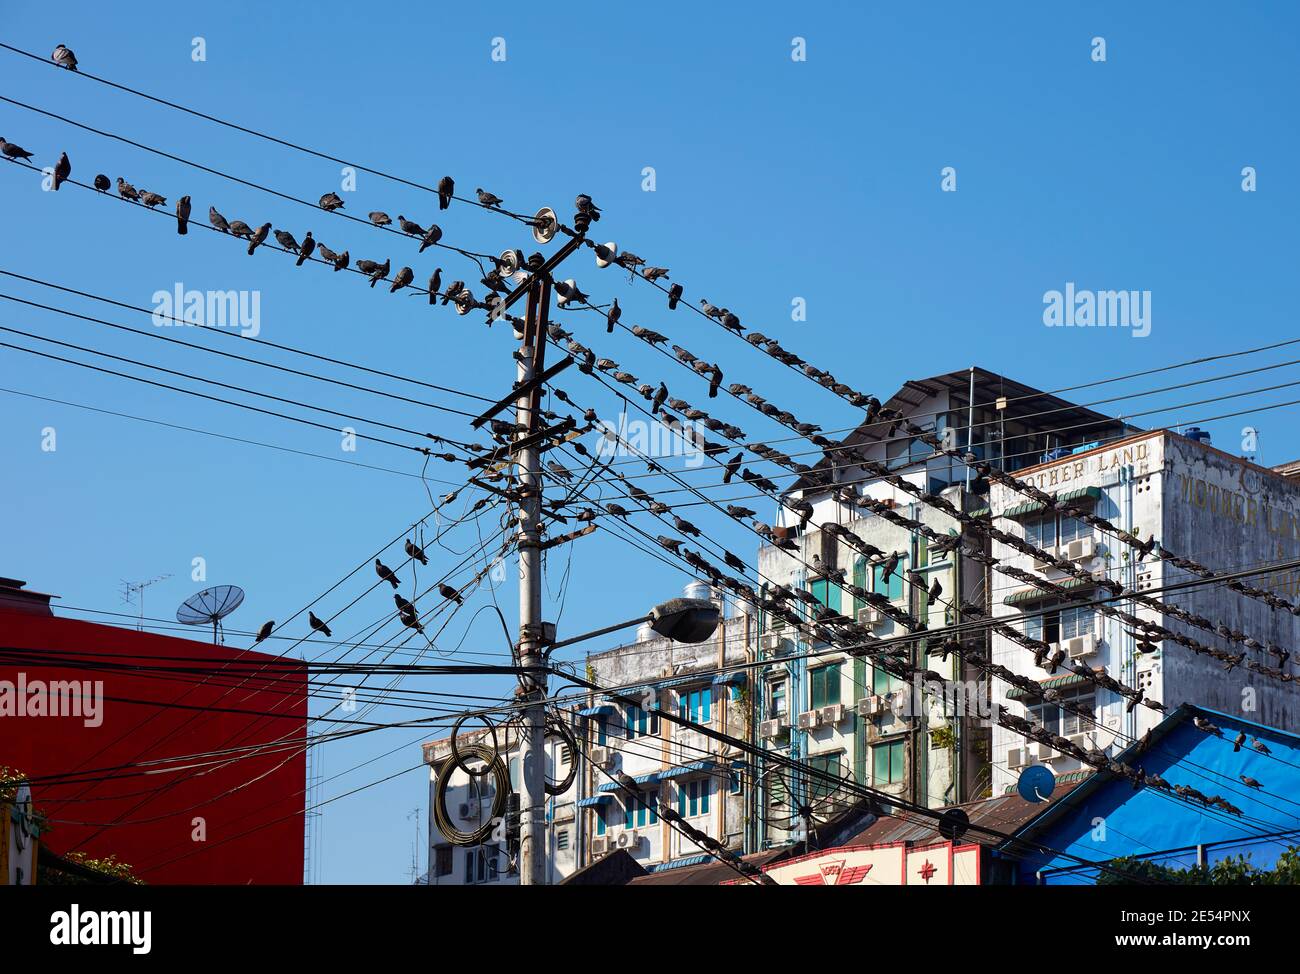 Eine Vogelgemeinschaft stellte sich auf Stromleitungen während eines sozialen Kommunikationsmeeting in Yangon, Myanmar, auf. Stockfoto